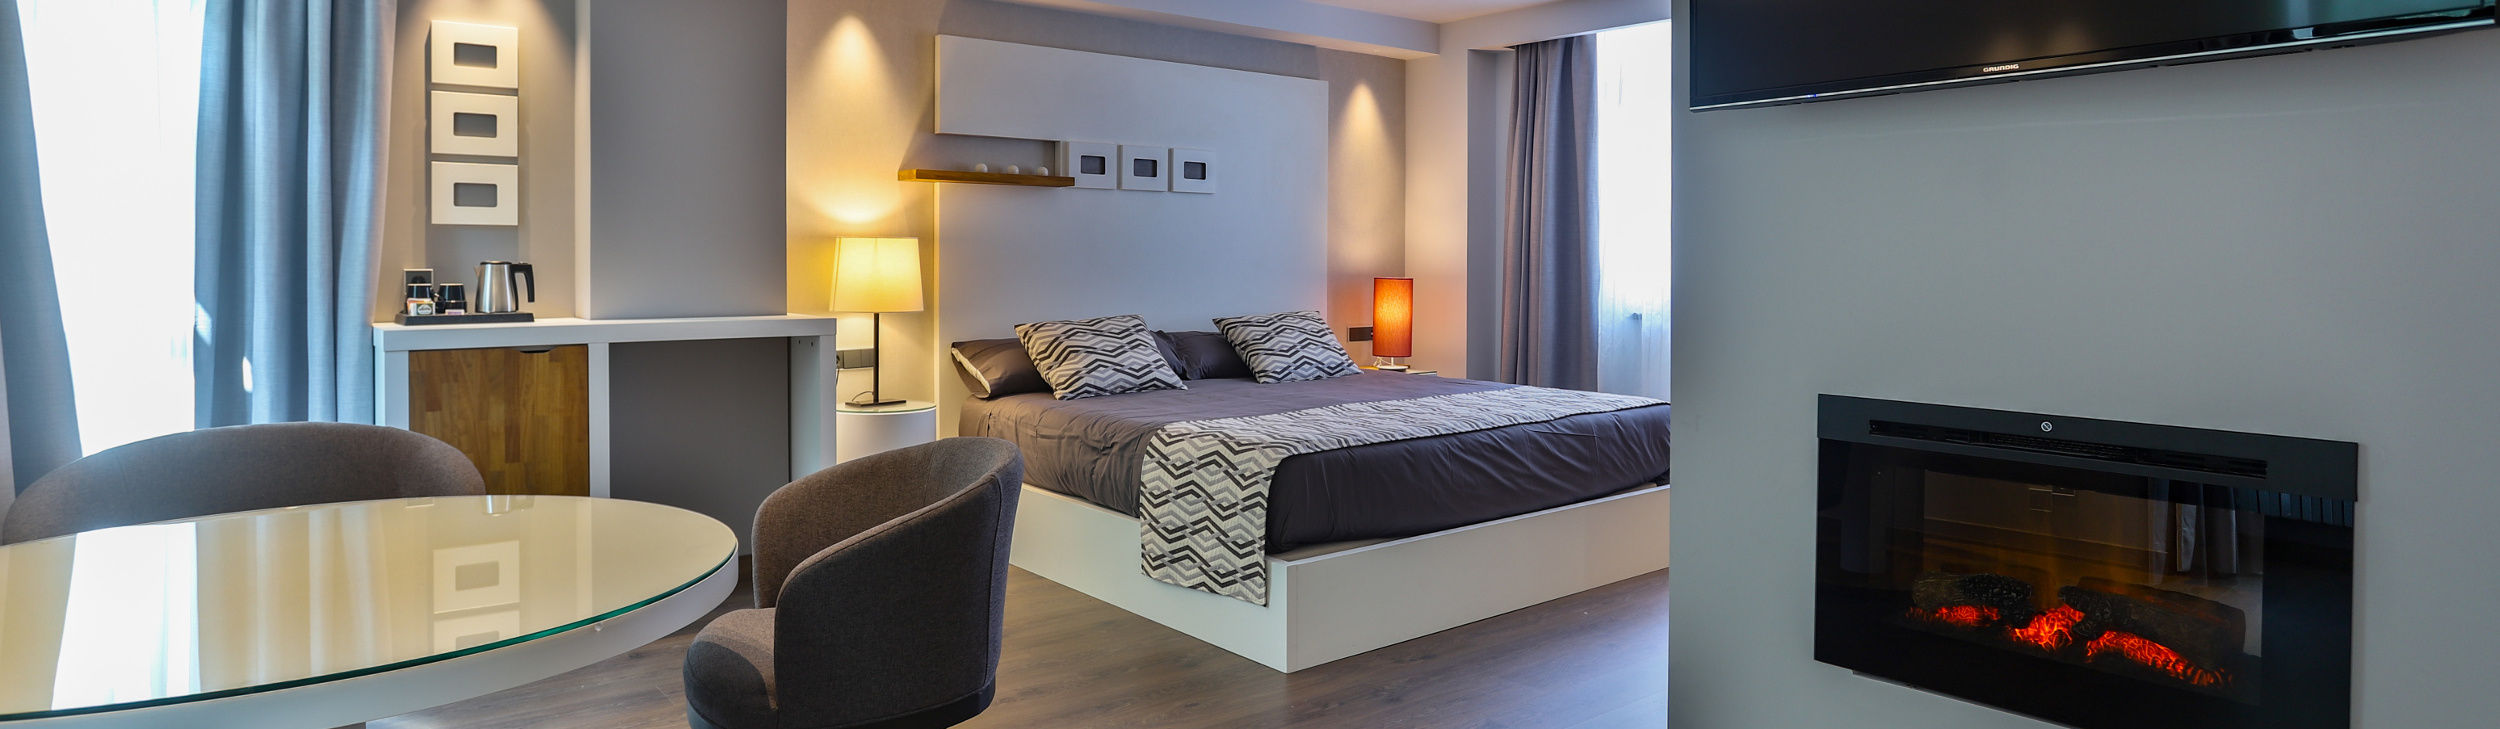 Hoteles en Andorra - Encuentre el mejor alojamiento